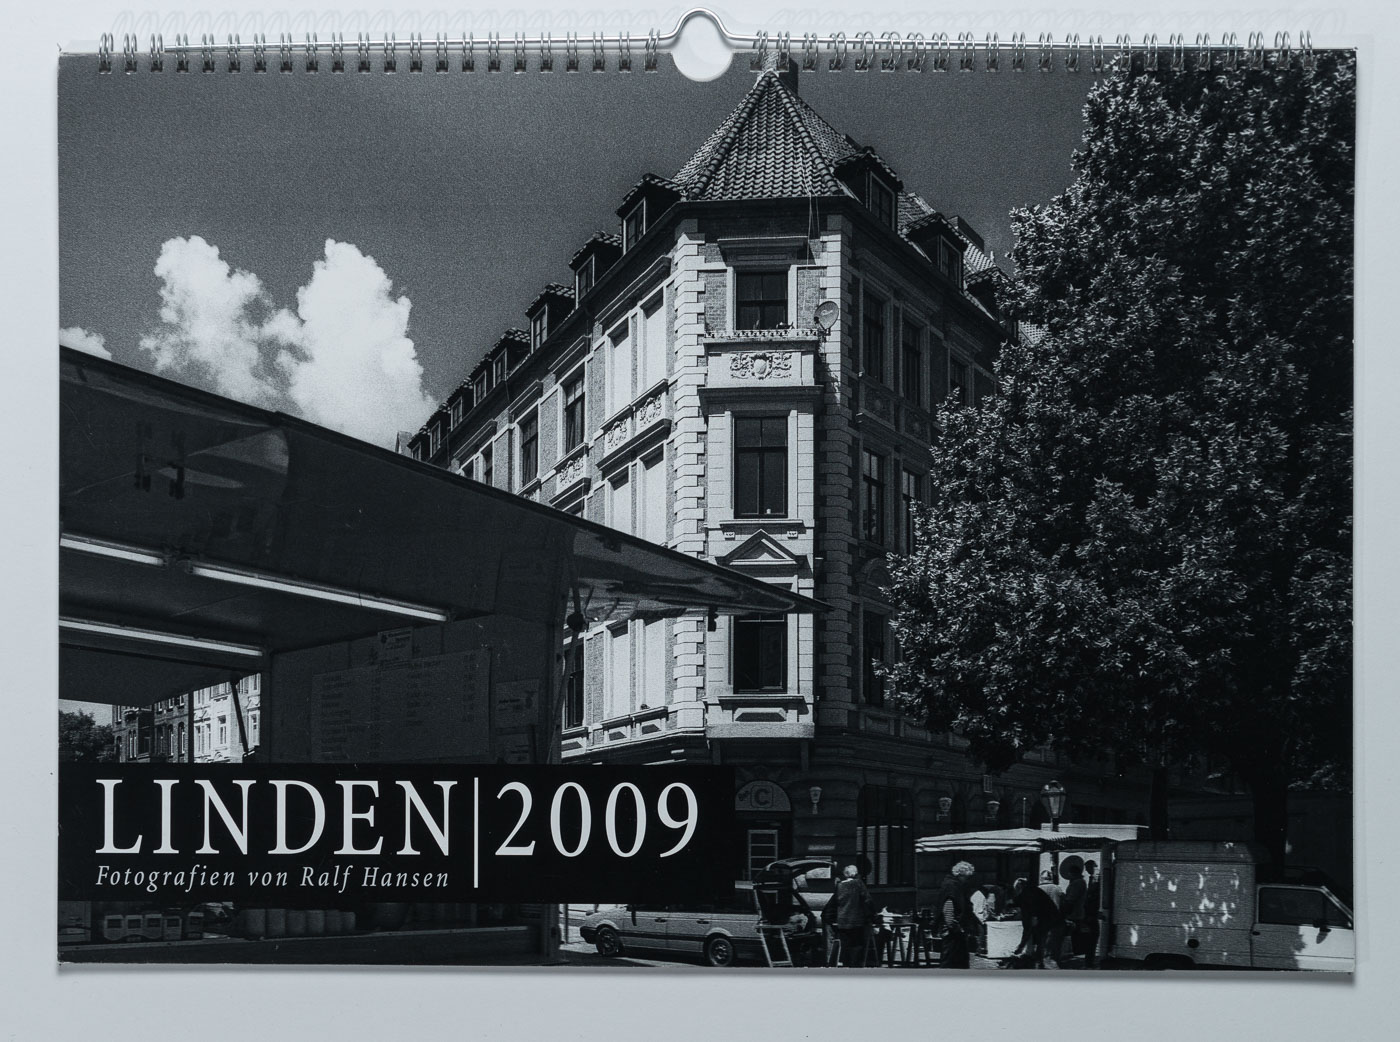 Lindenkalender LINDEN 2009